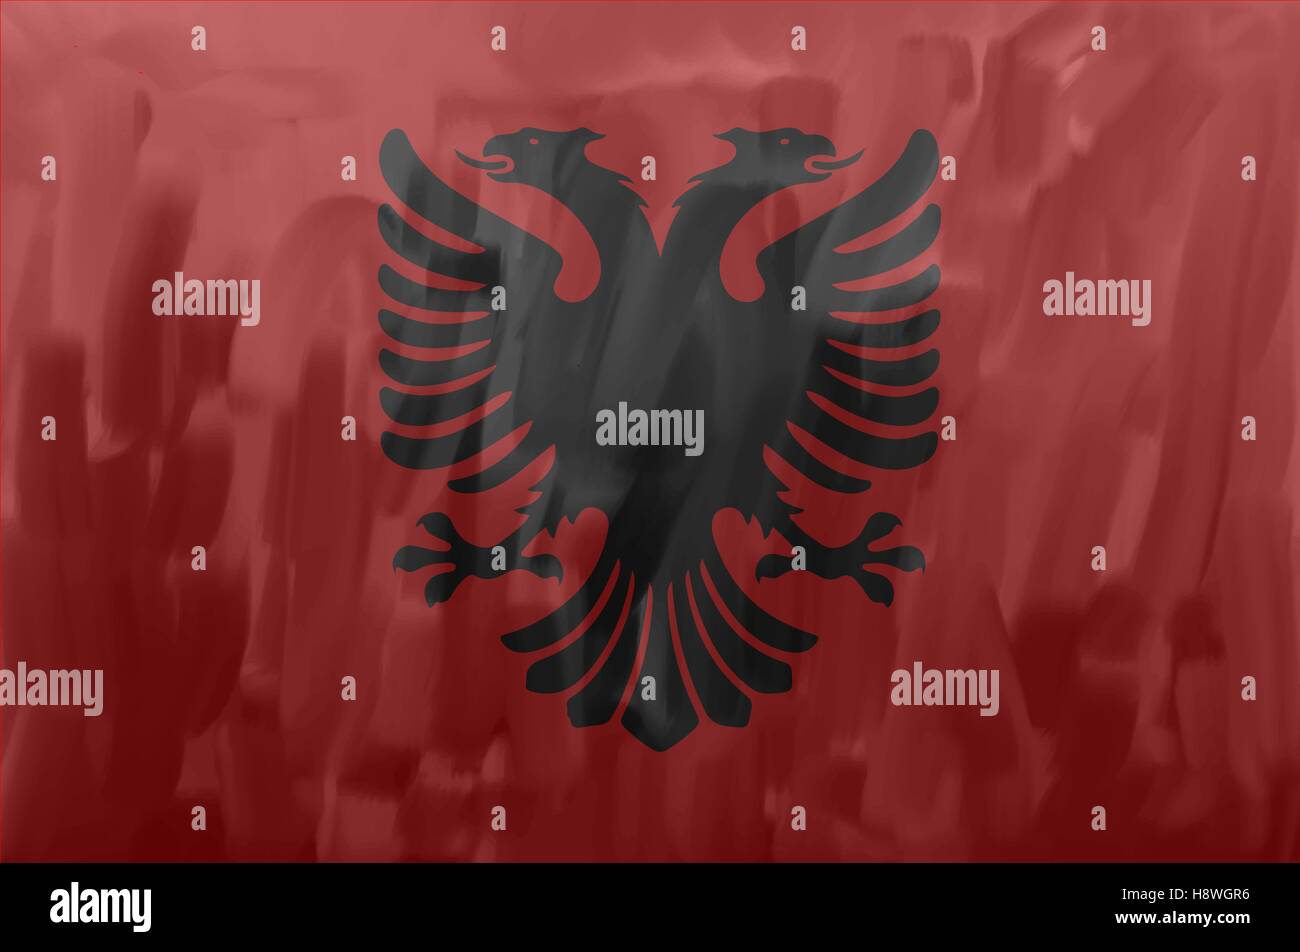 Albanische bemalt / gezeichnete Vektor Flagge. Vektor-Datei enthält Flagge und Textur-Layer. Stock Vektor